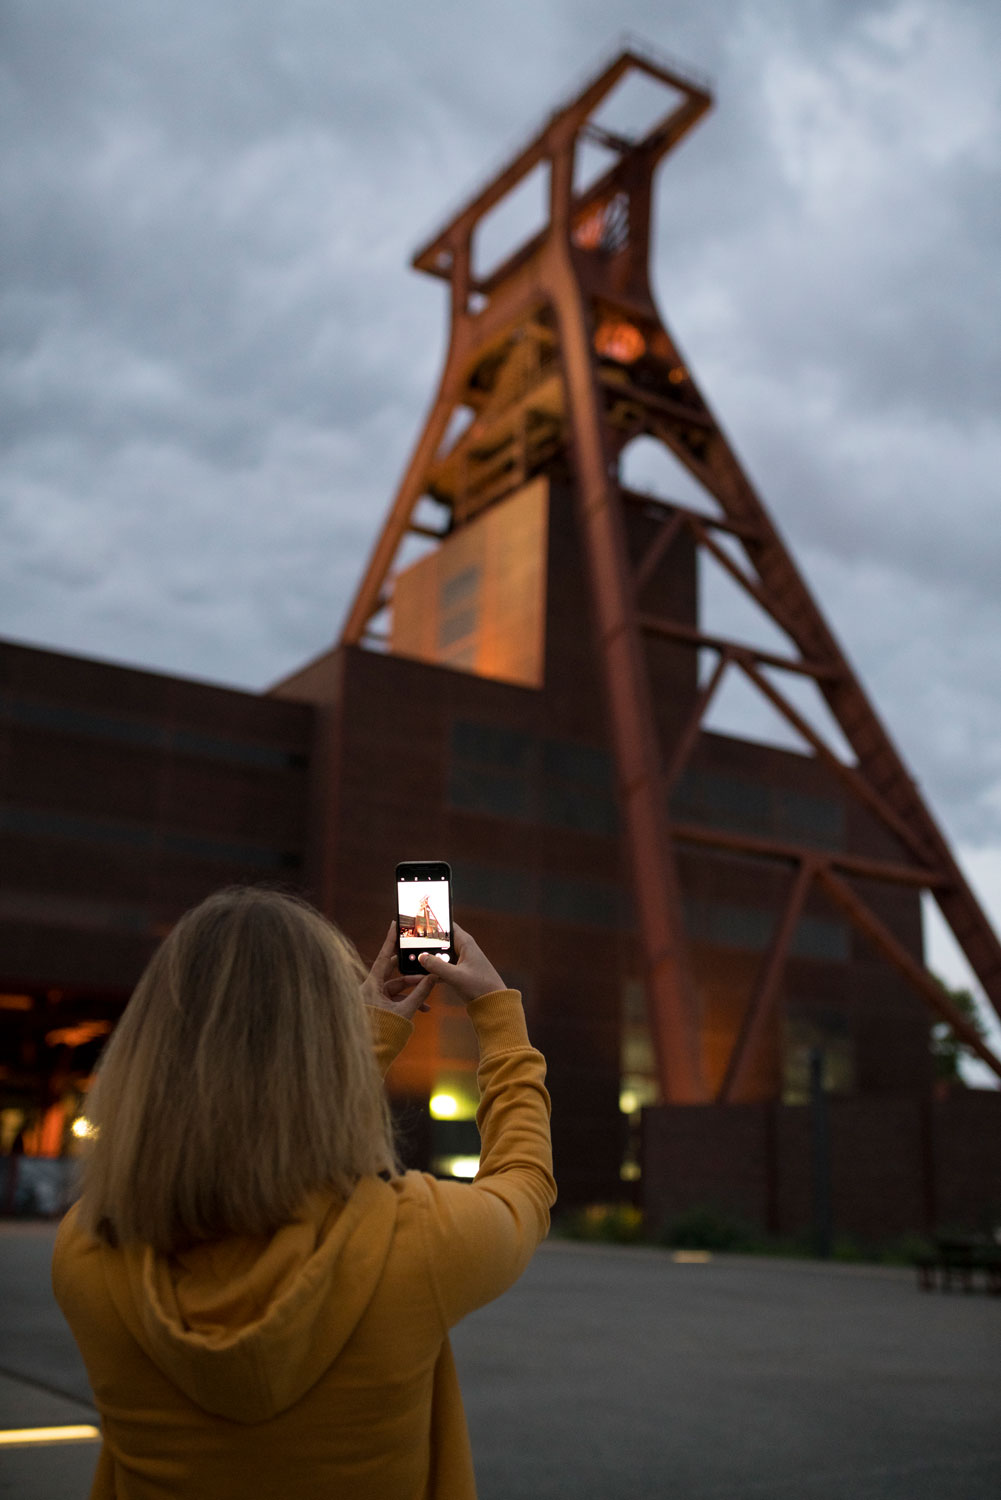 Eine Frau mit Smartphone fotografiert den Förderturm des Deutschen Bergbau-Museums in Bochum bei Sonnenuntergang.